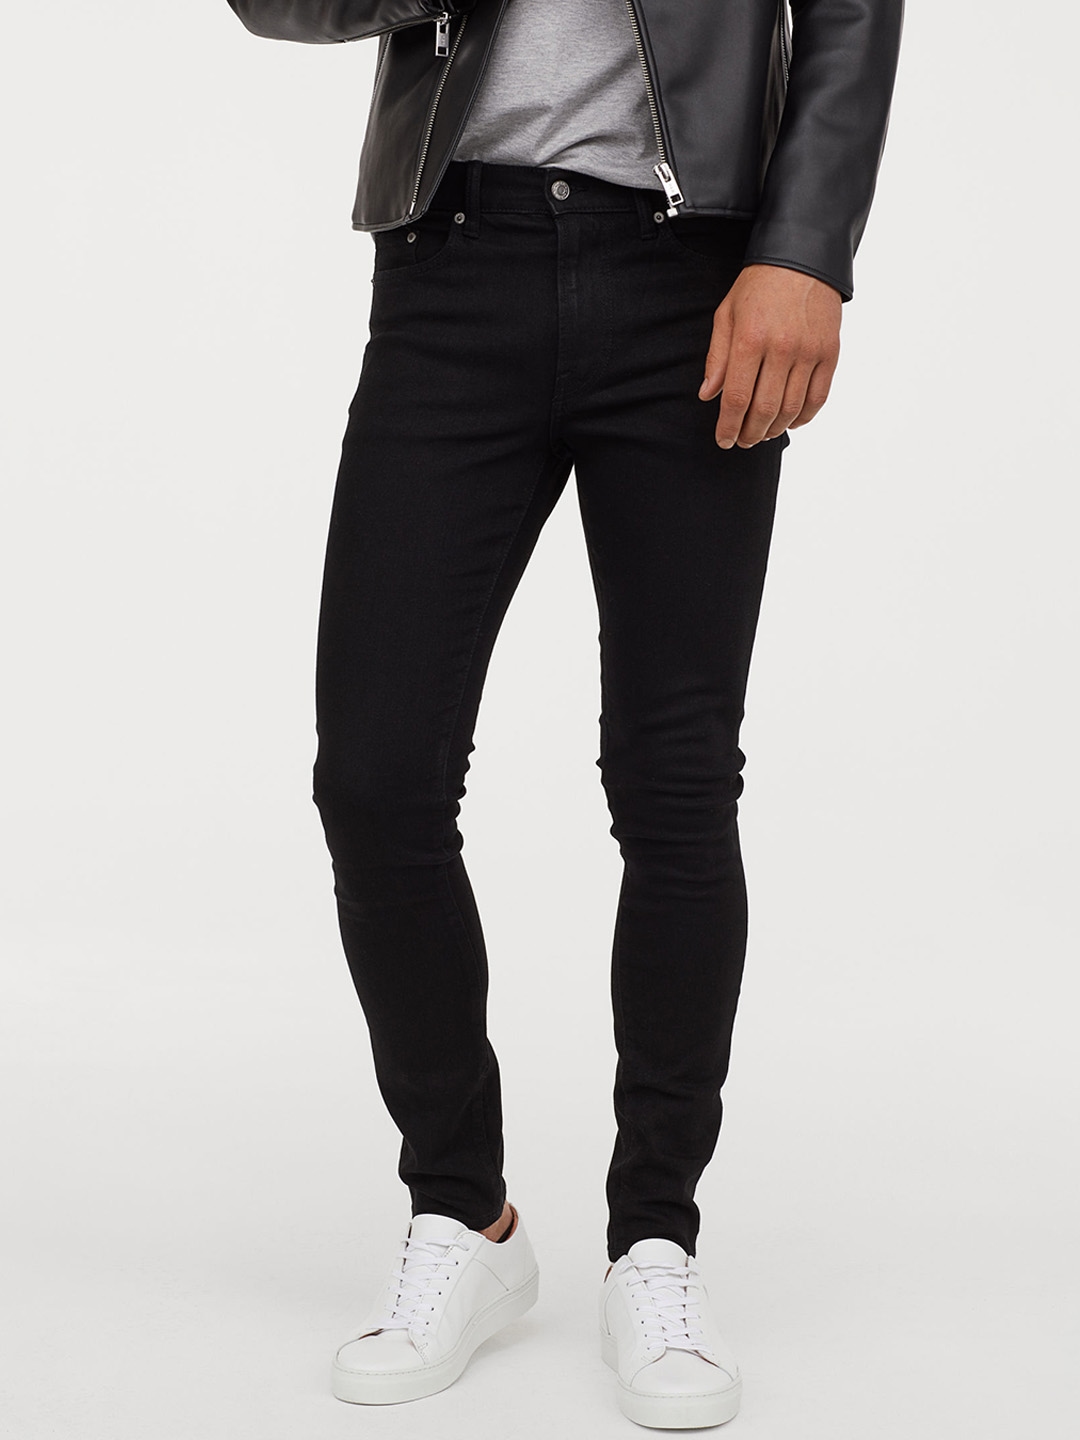 Buy H&M Men Black Clean Look Skinny Jeans - Jeans for Men 10376053 | Myntra